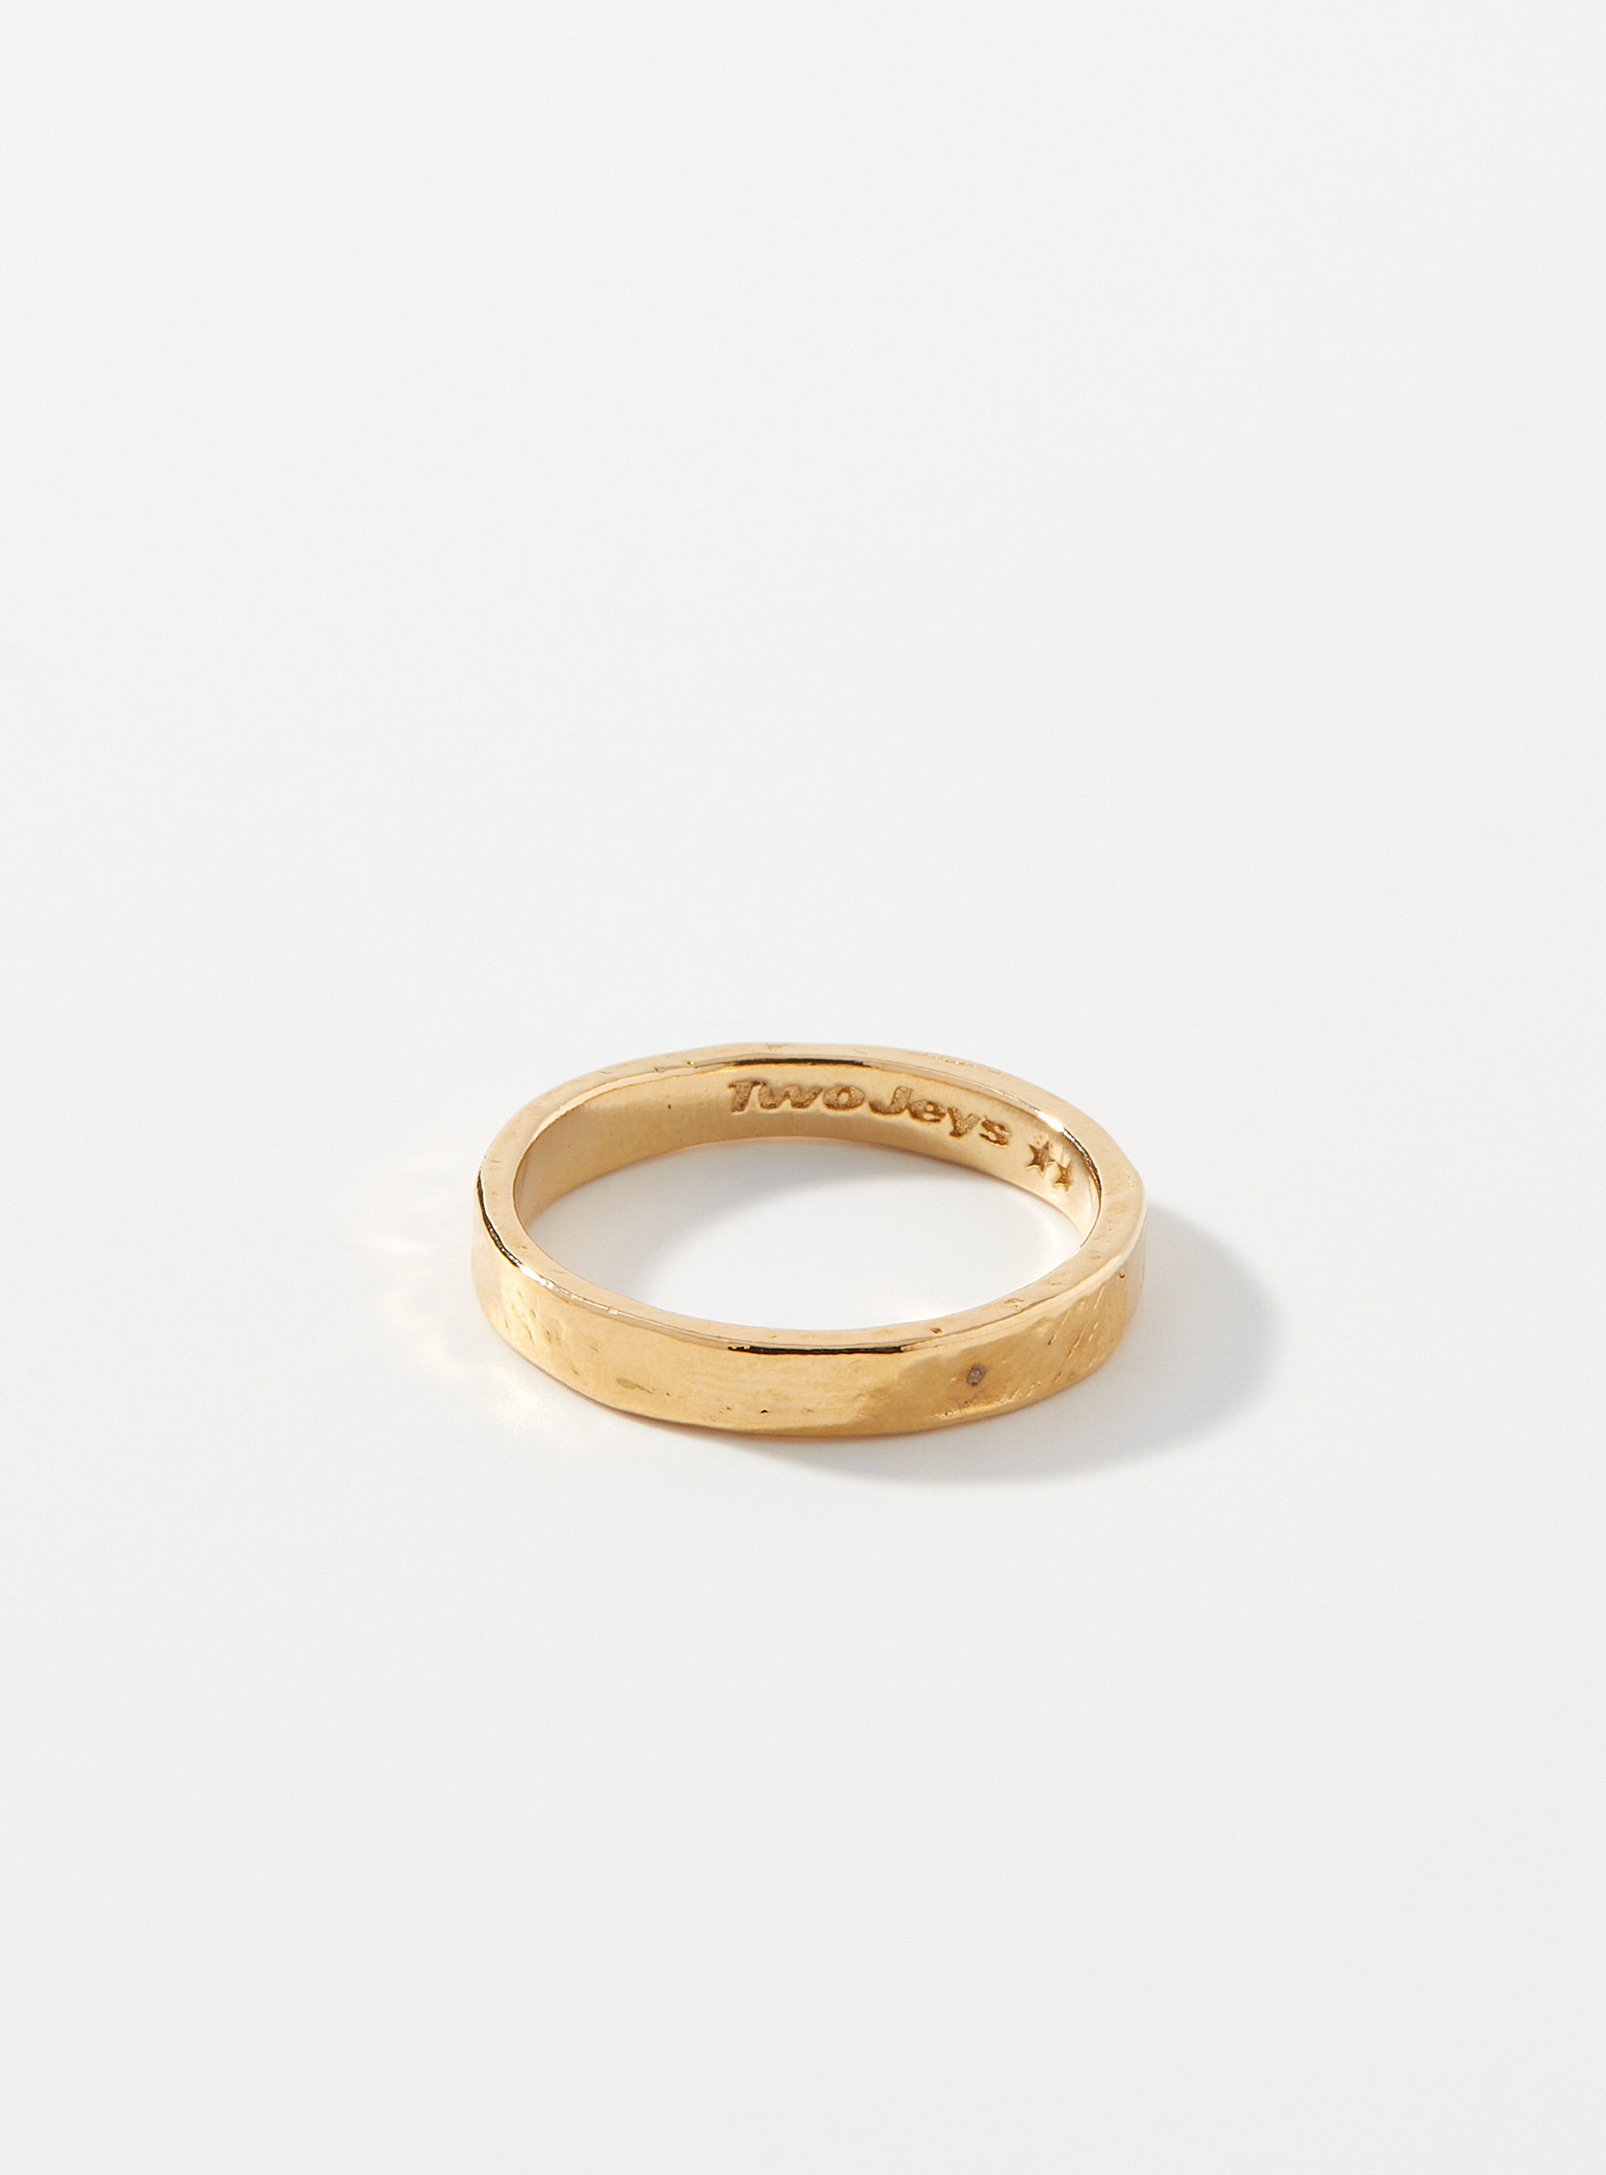 Twojeys - Men's Golden 01 ring